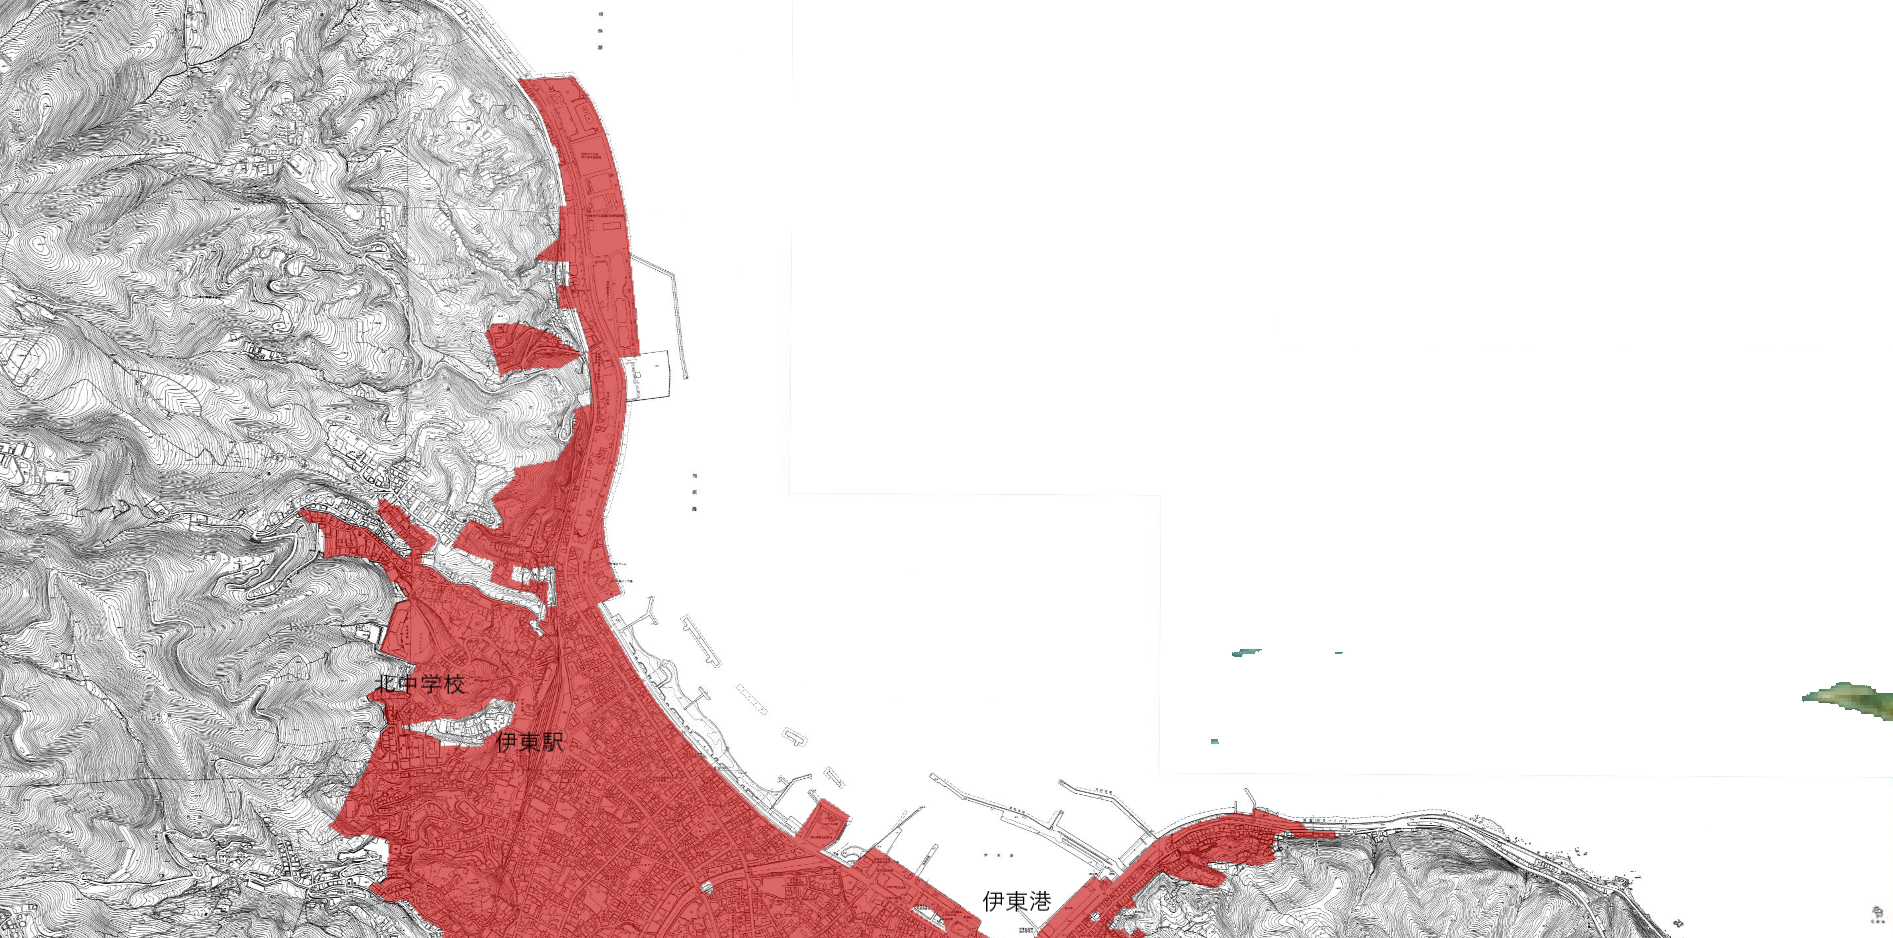 供用開始区域を色付けされた伊東地区北の地図